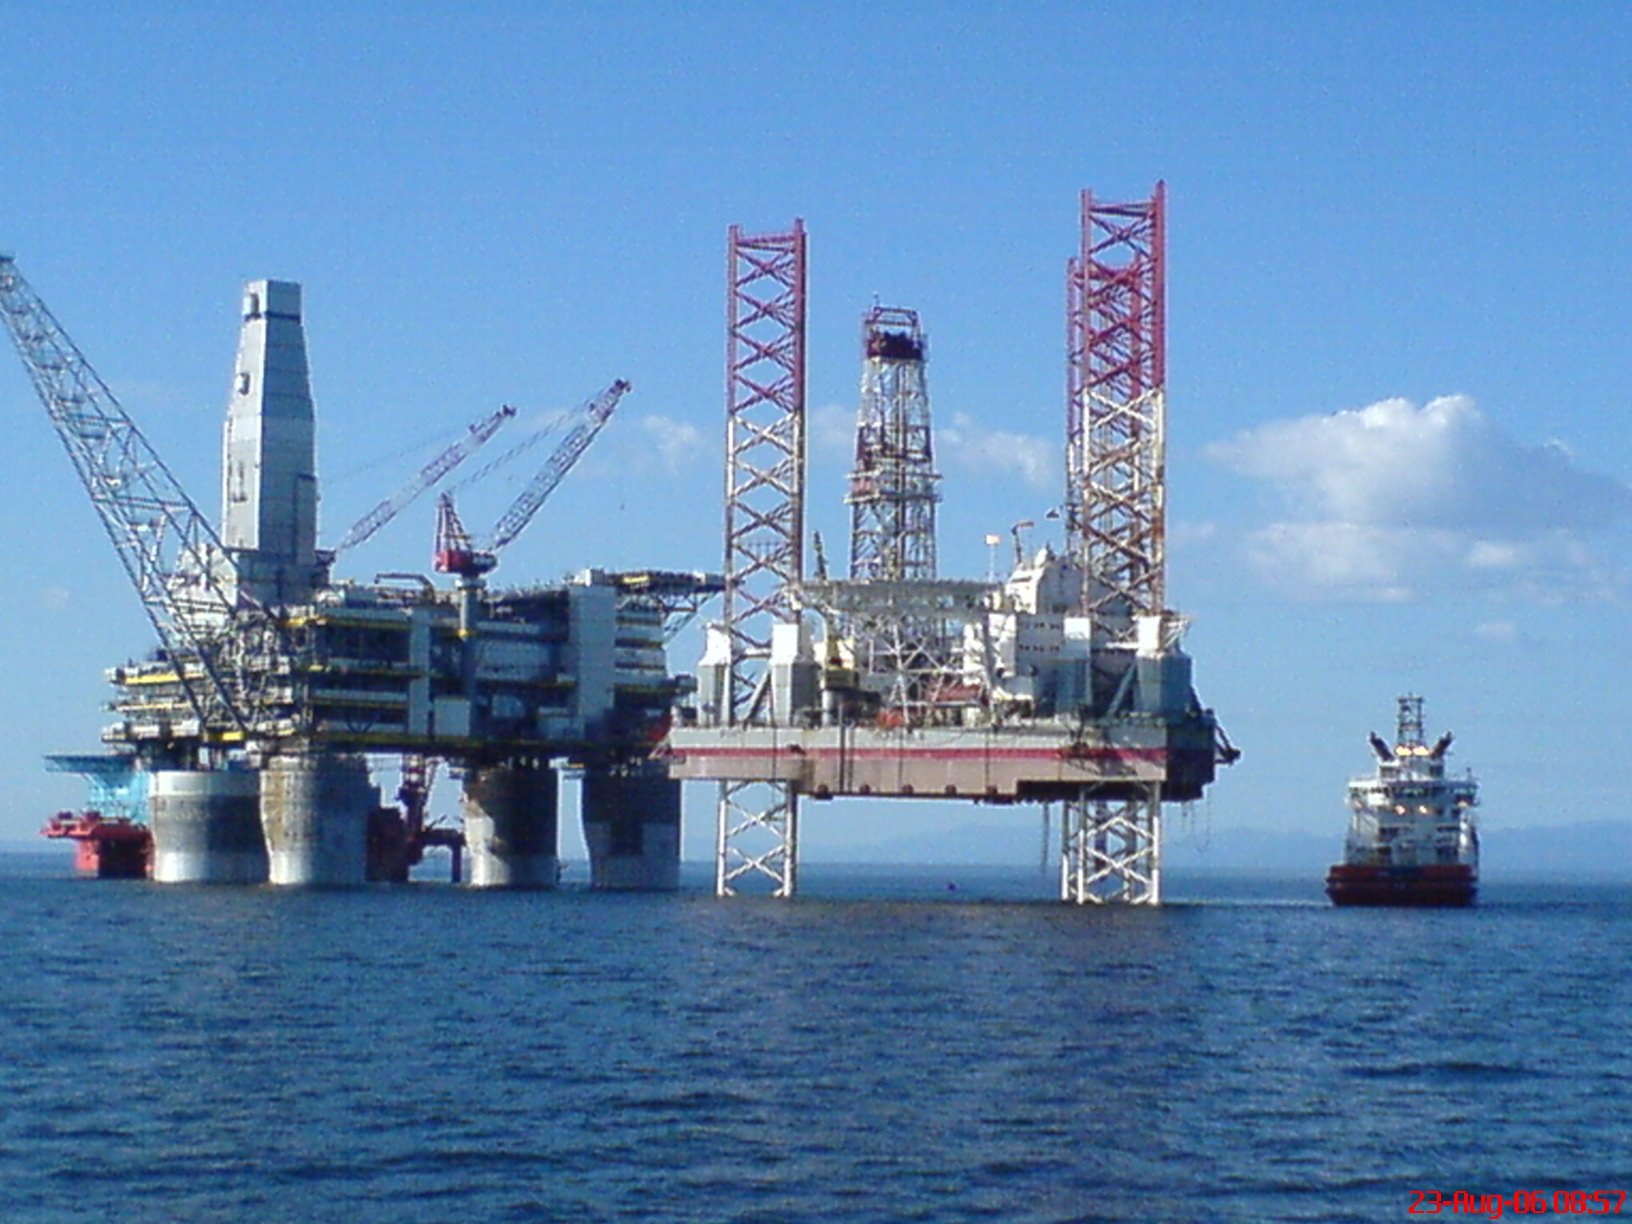 Нафтогаз получил разрешение на добычу в Черном море